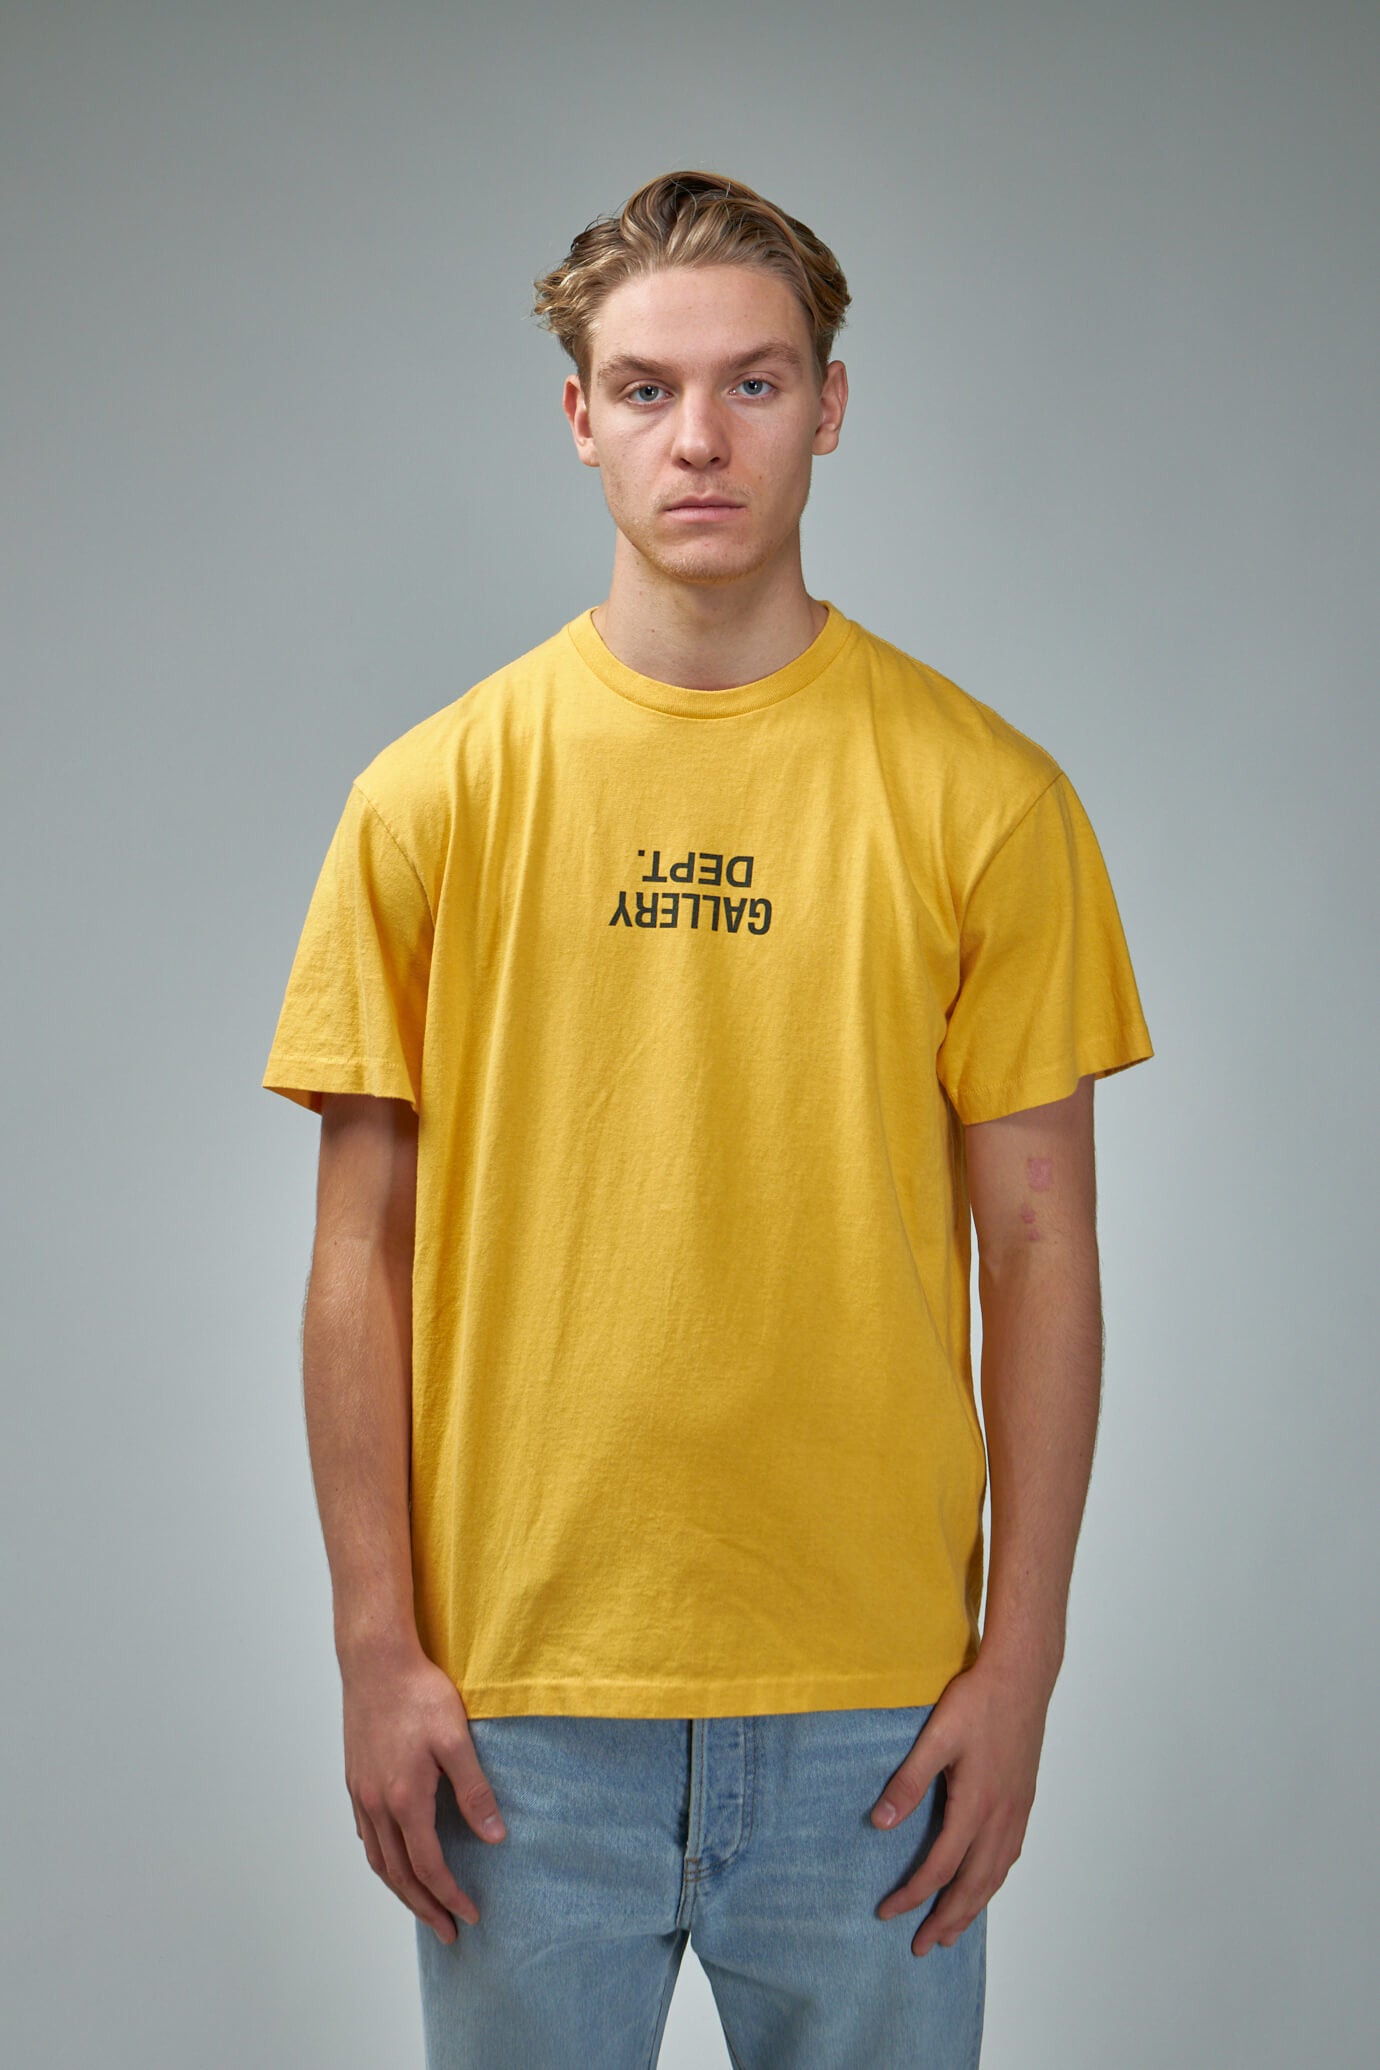 Gallery Dept. Men's T-Shirt - Yellow - XL